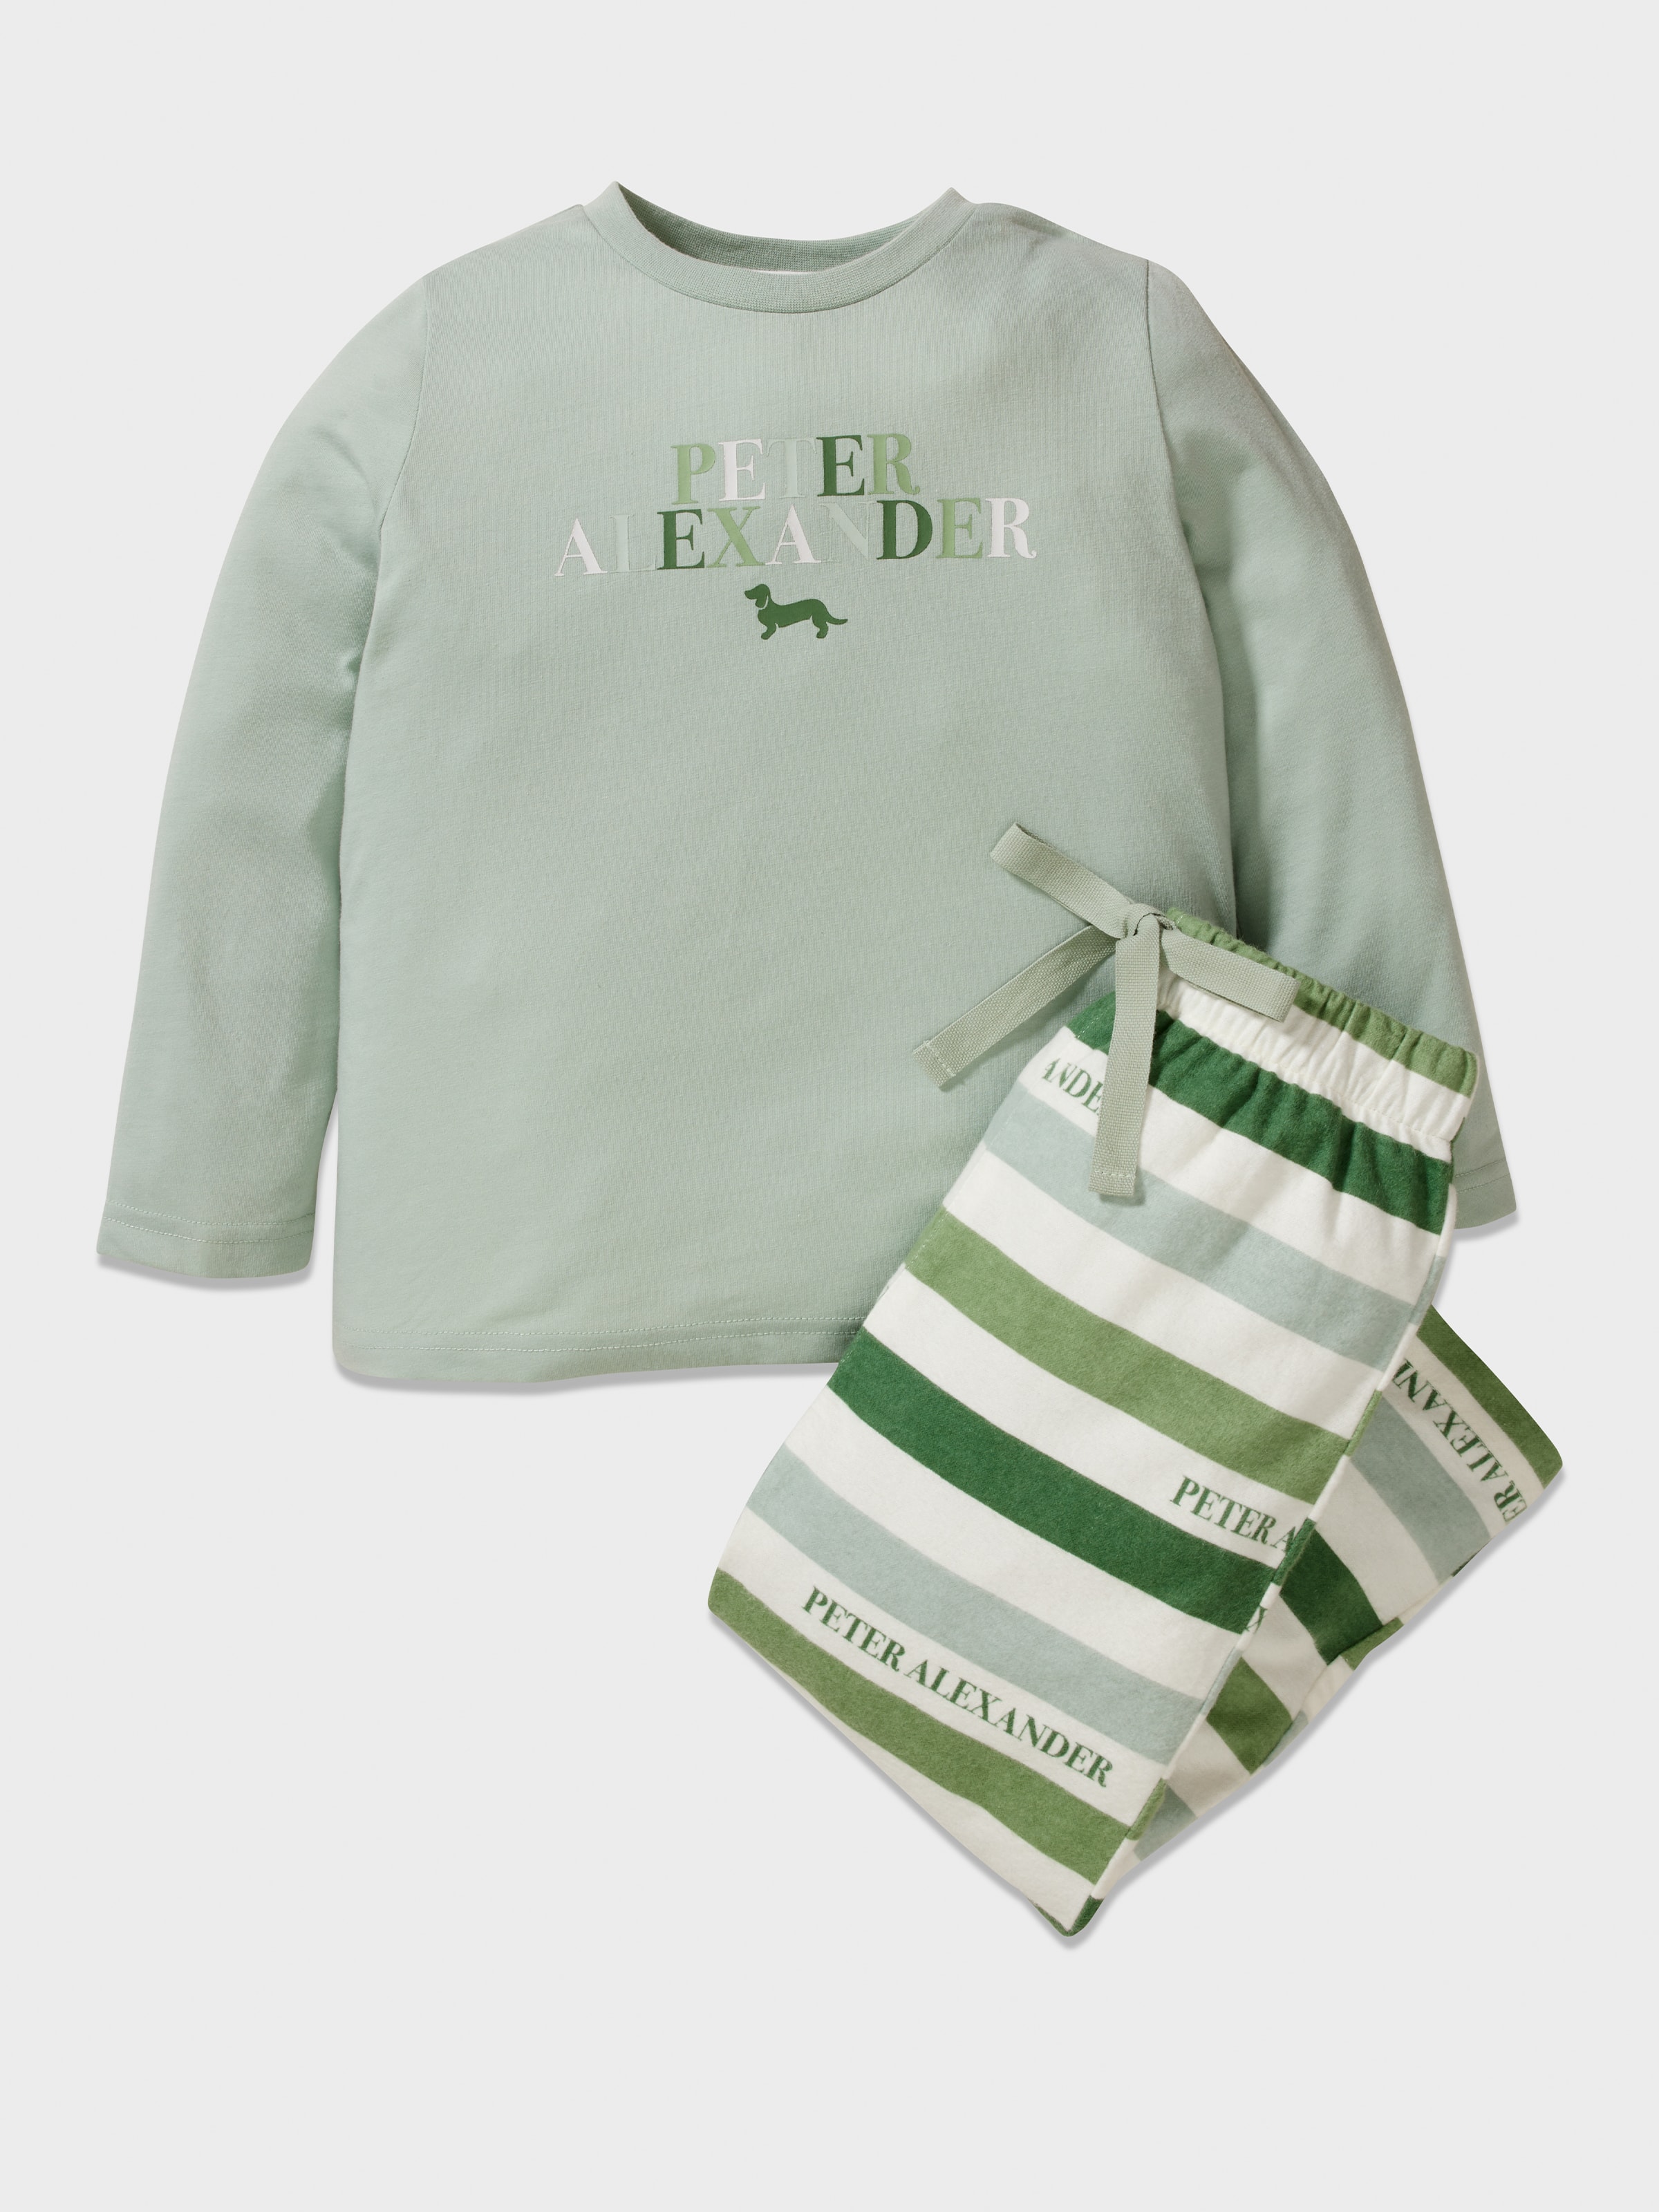 Peter Alexander Men's Green Stripe Long Flannelette Pyjama/Lounge